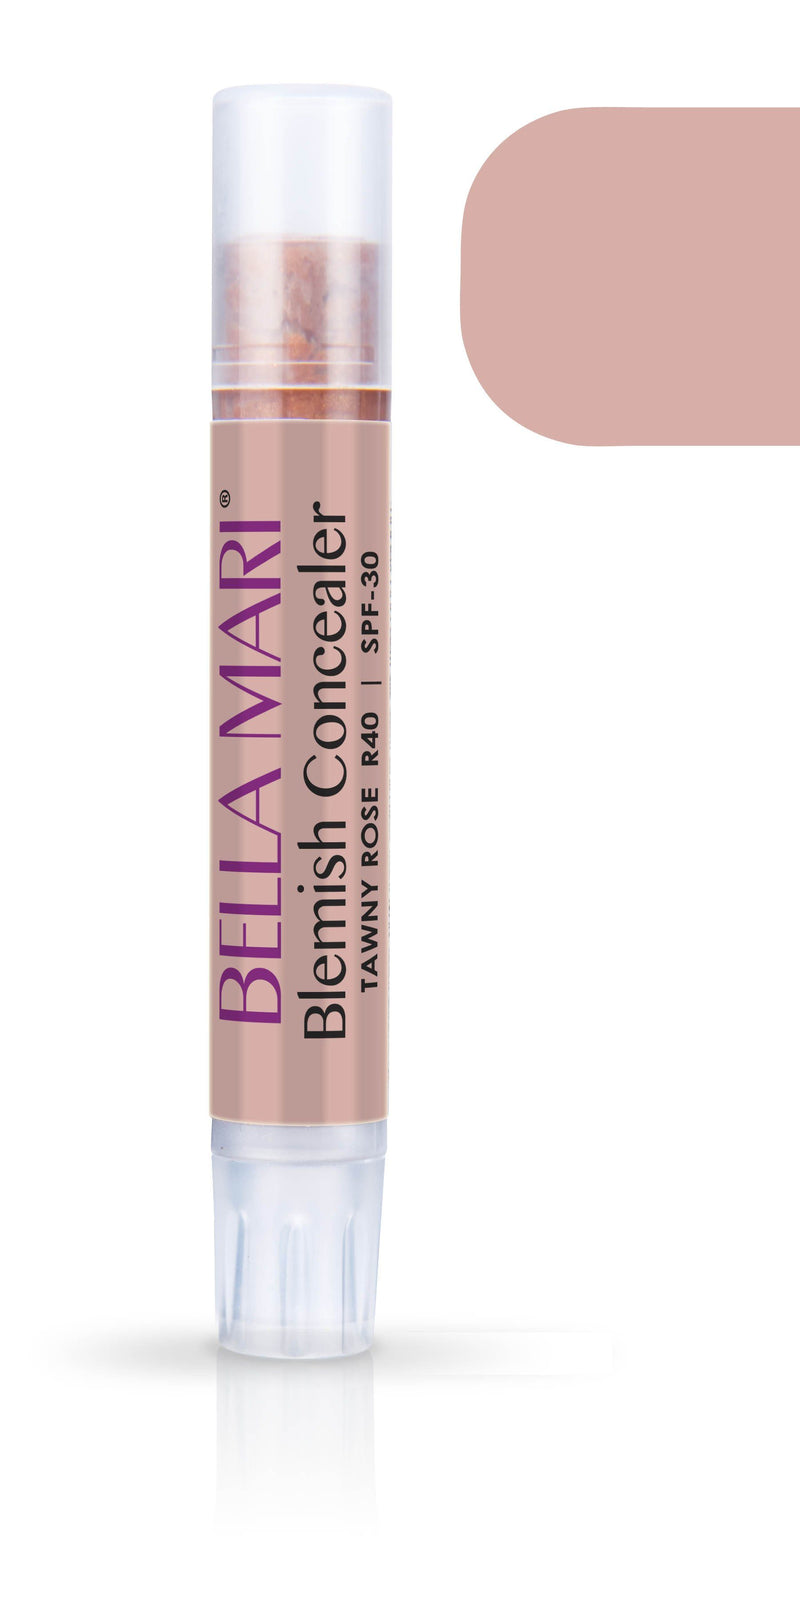 Bella Mari Natural Blemish Concealer Stick; 0.1floz - Bella Mari Natural Blemish Concealer Stick; 0.1floz - Tawny Rose